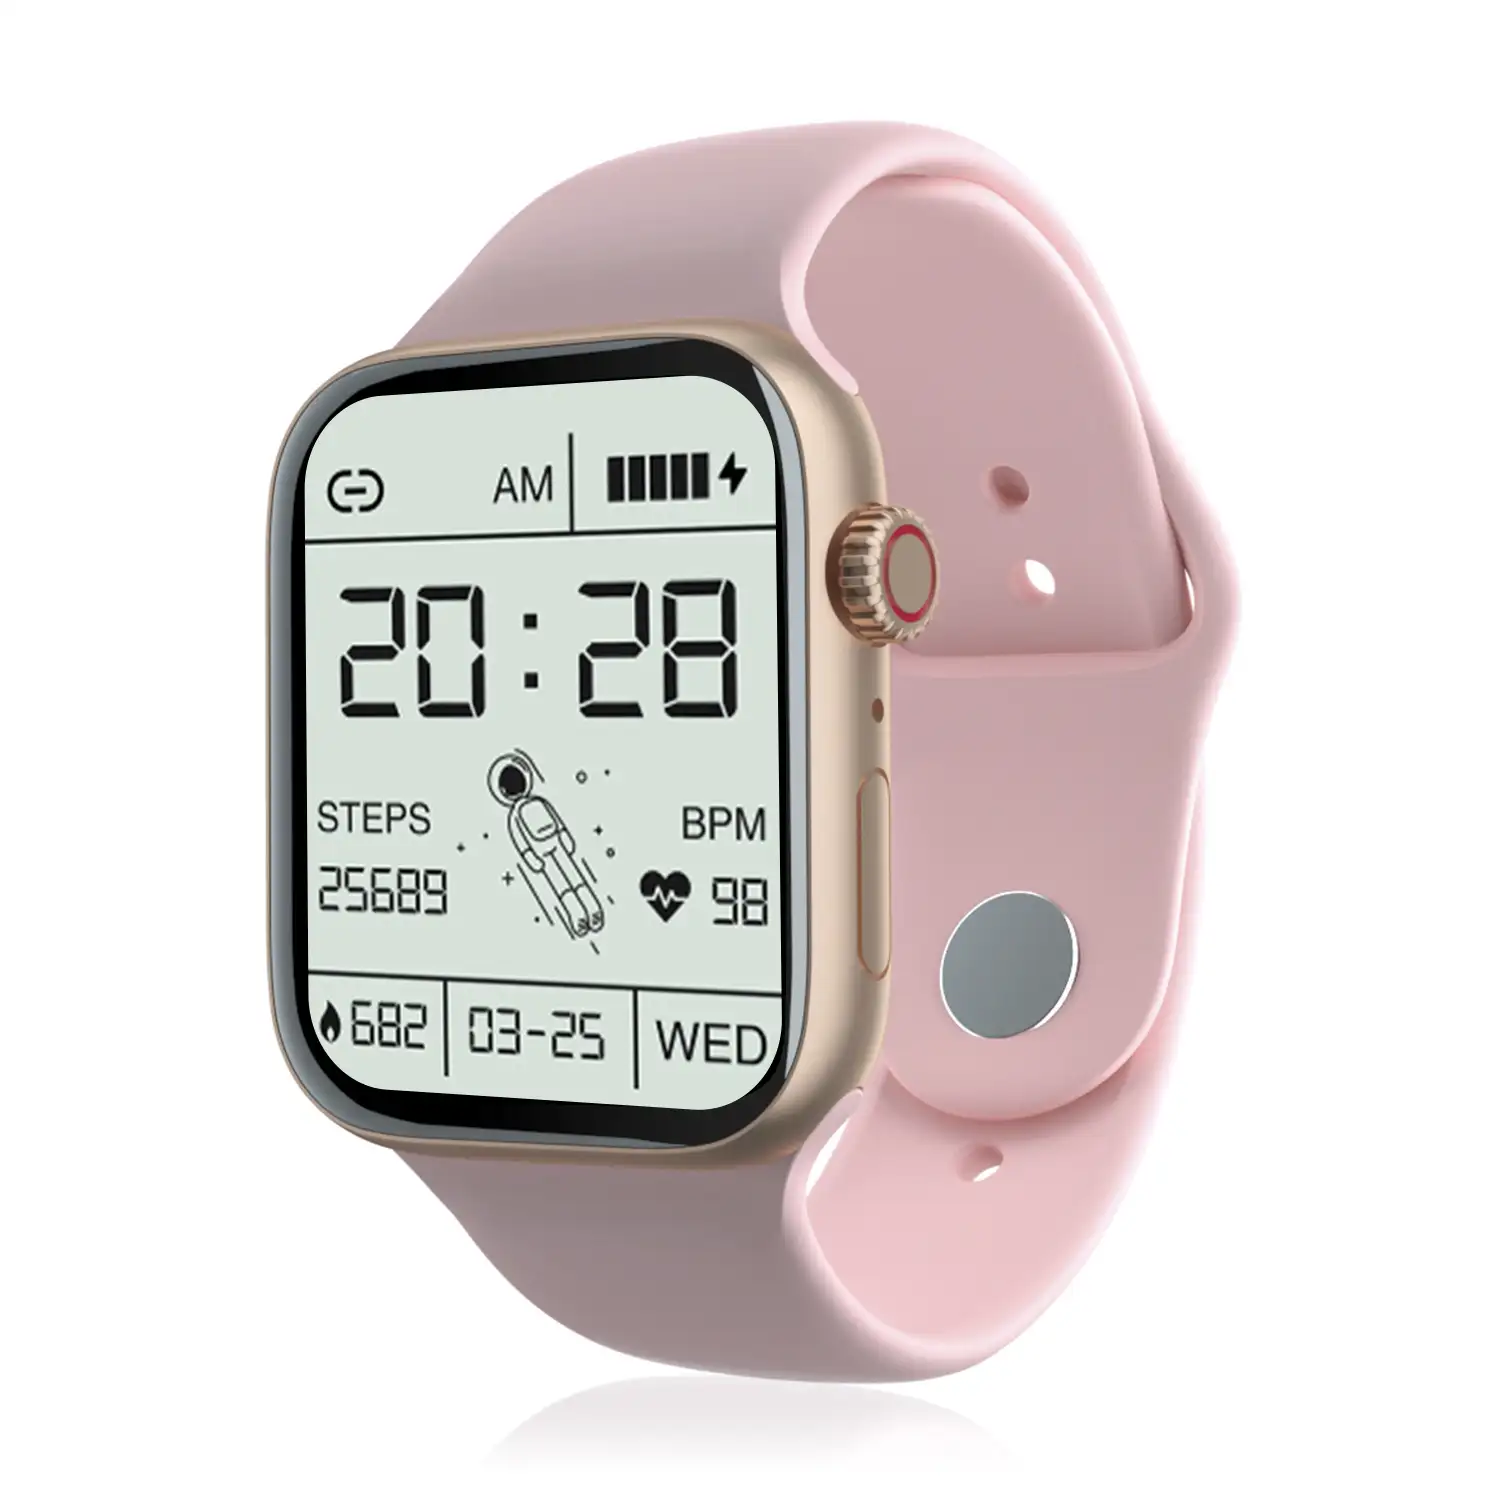 Smartwatch S12 Pro con monitor cardíaco, tensión y de O2 en sangre. 8 modos deportivos. Corona multifunción.